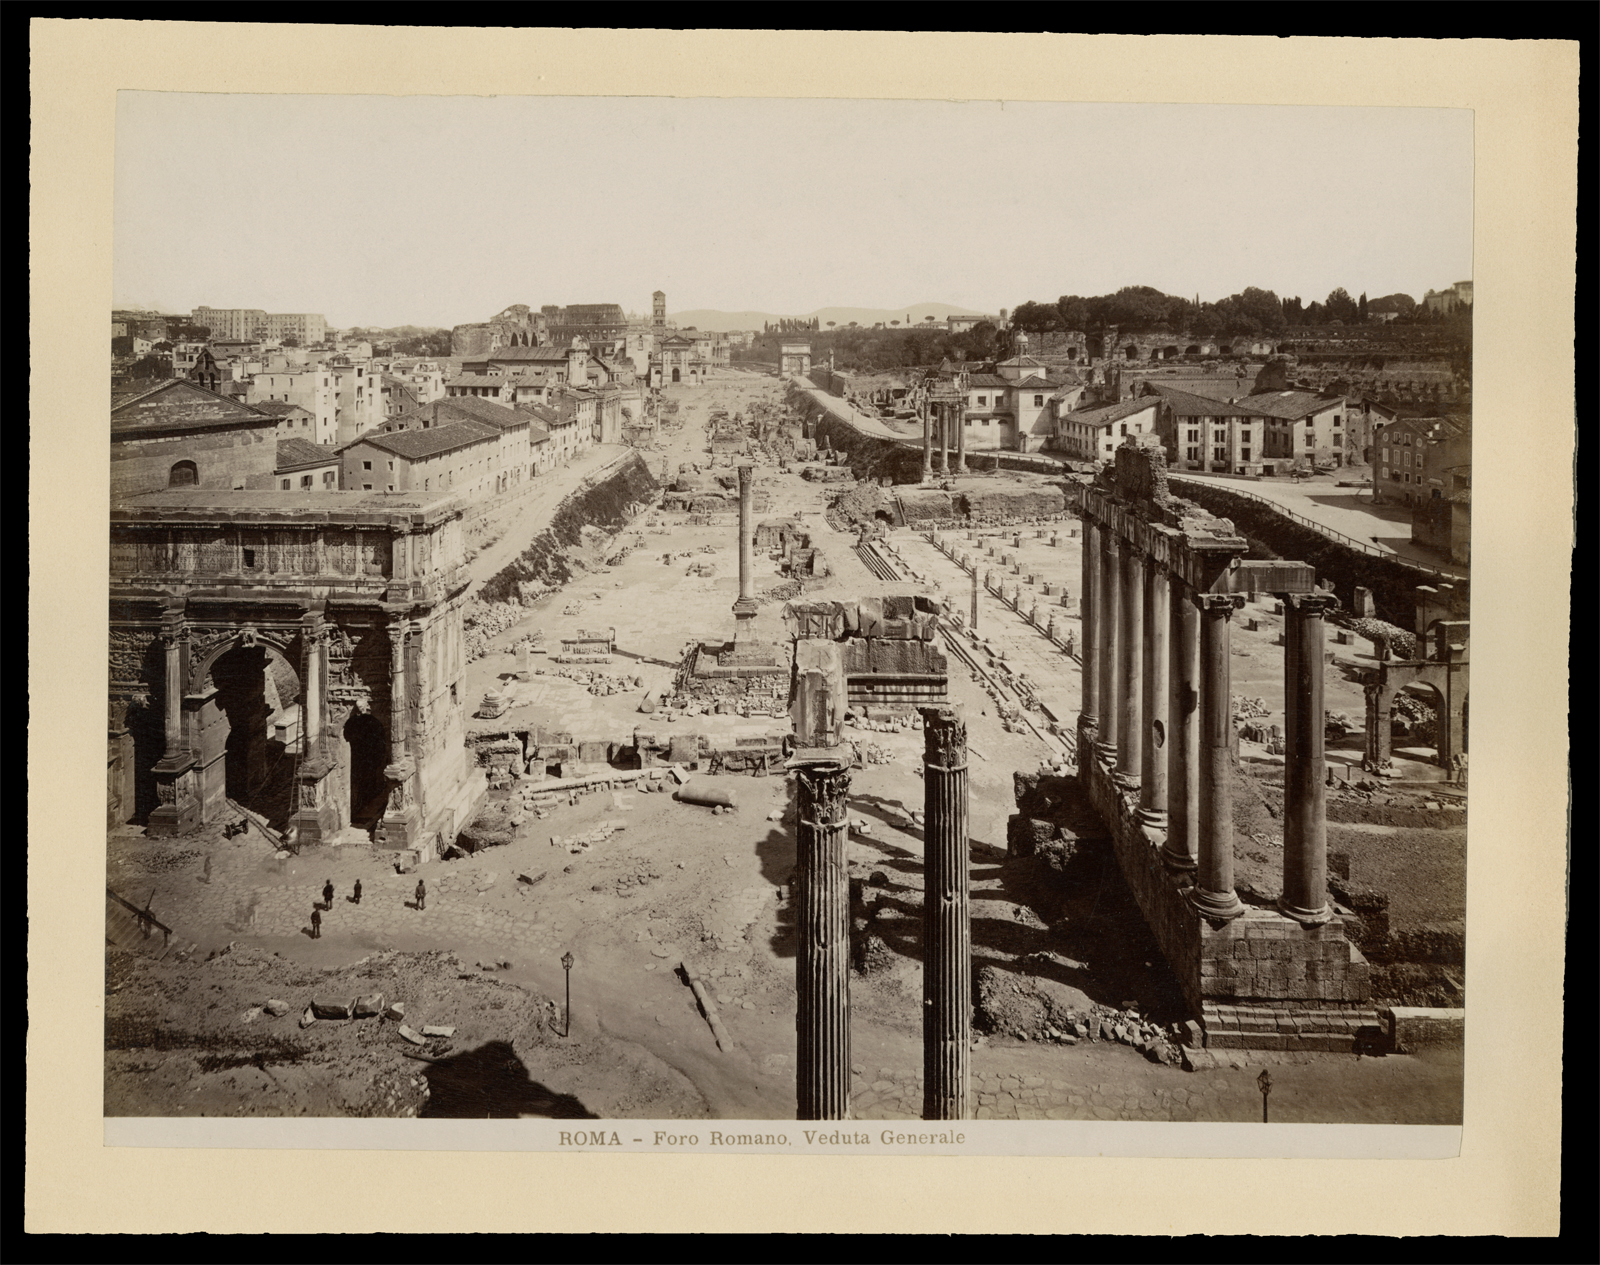 James Anderson: Roma - Foro Romano, Veduta Generale, ca. 1870